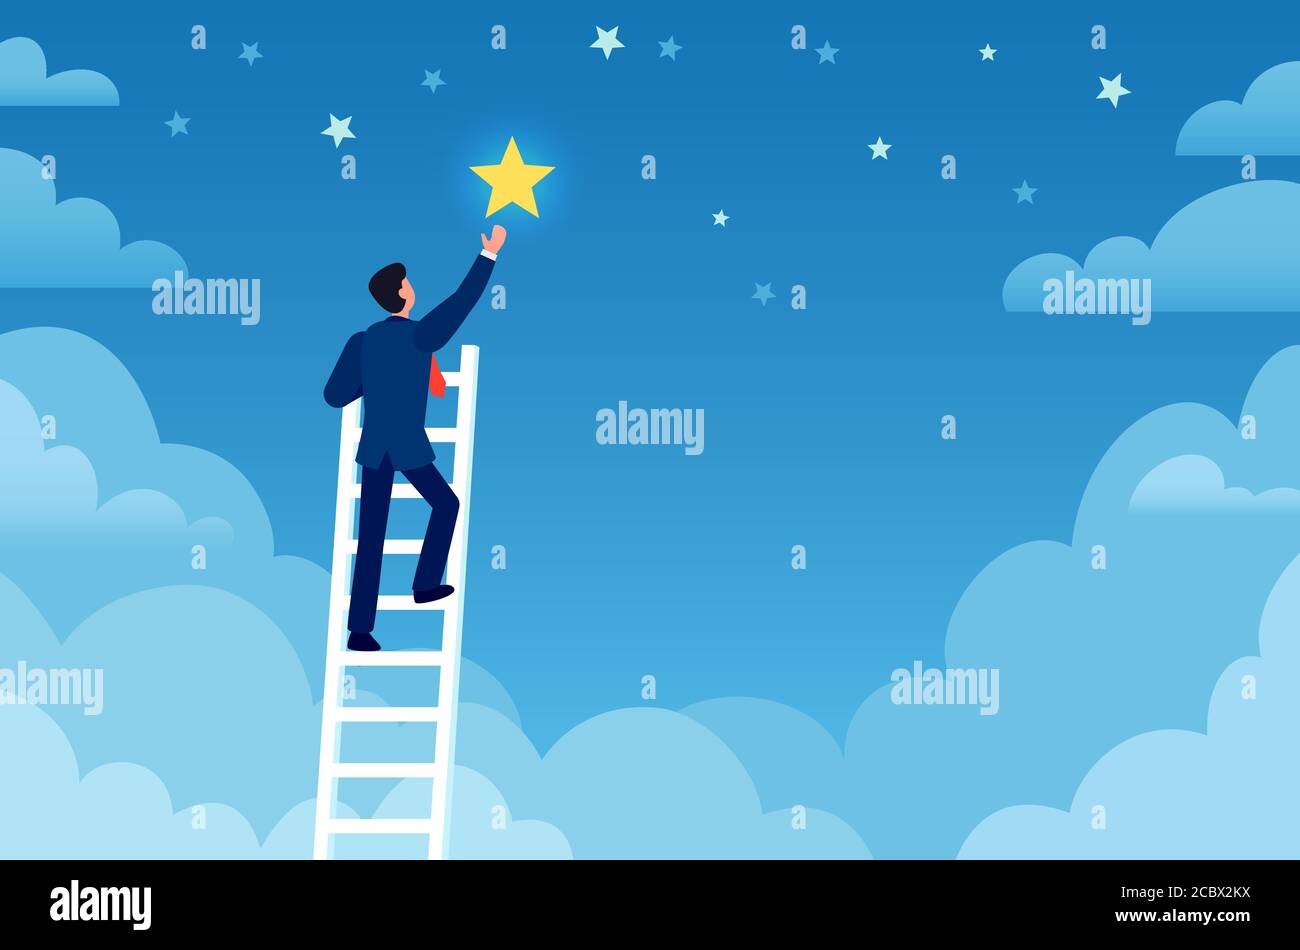 Erfolg für Geschäftsleute. Der Mensch auf der Leiter erreicht Sterne am Himmel, erreicht Ziele und Träume. Karriere nach oben, Führung, kreative flache Vektor-Konzept Stock Vektor